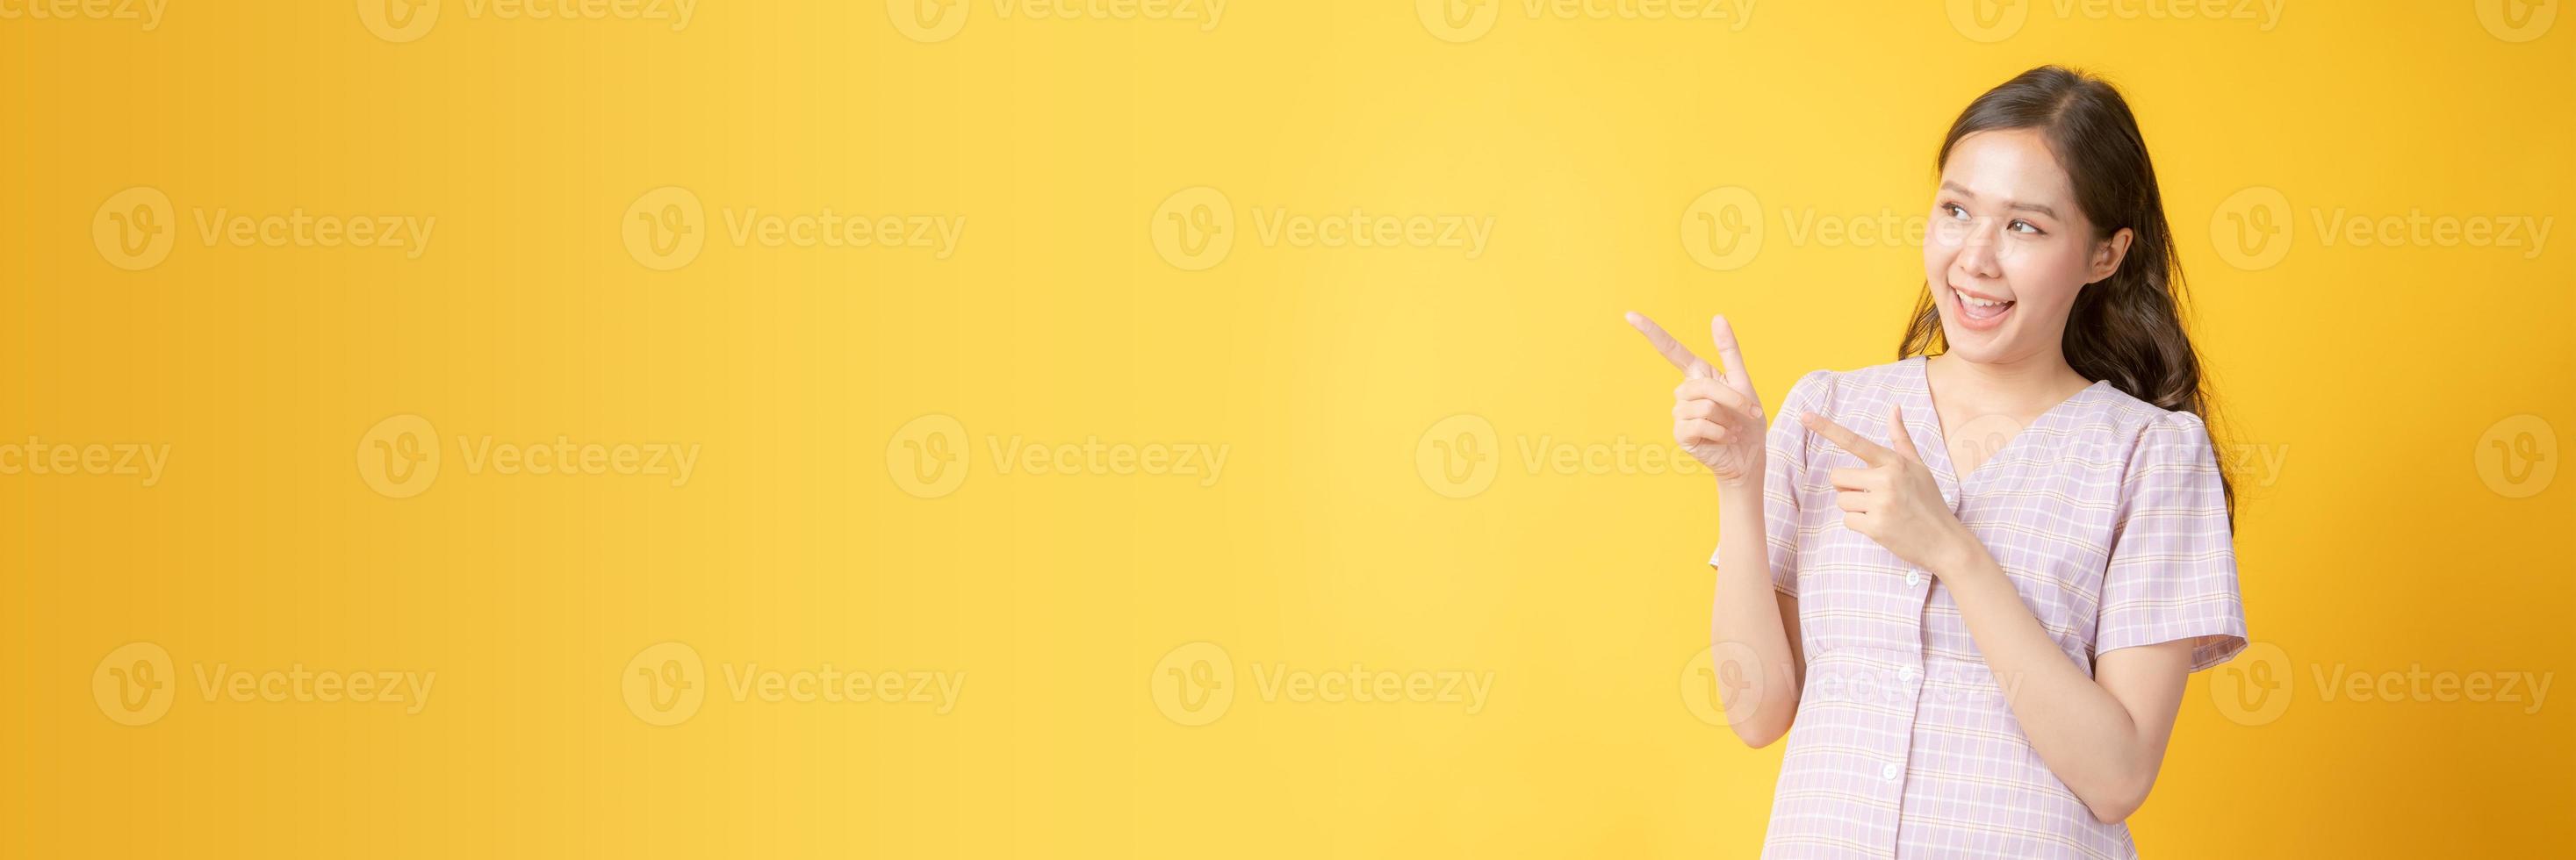 mulher asiática sorrindo e gesticulando em direção ao espaço de cópia em fundo amarelo foto